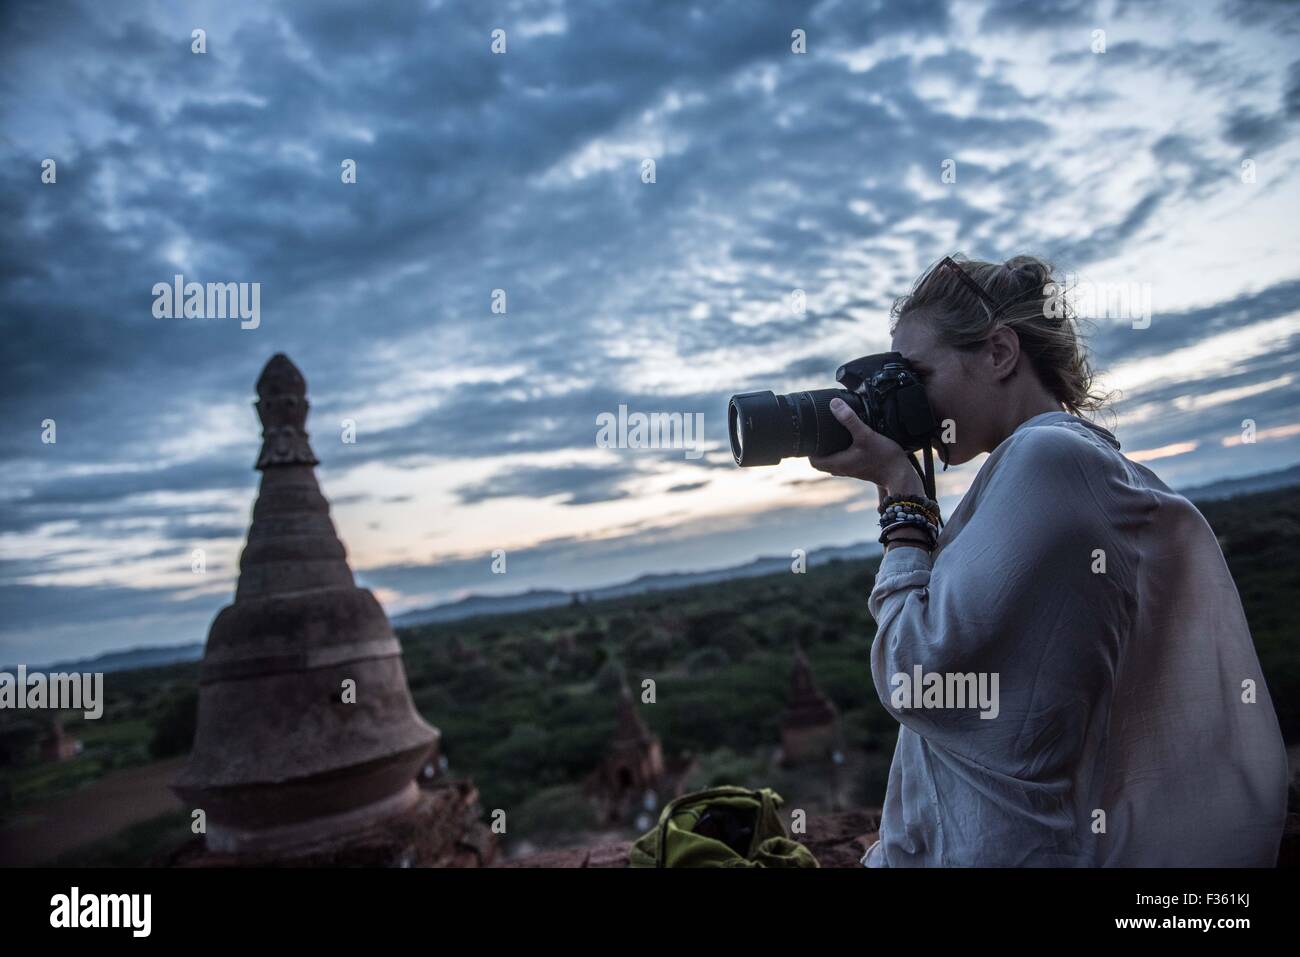 Un viajero toma fotos de los templos de Bagan, Myanmar Foto de stock